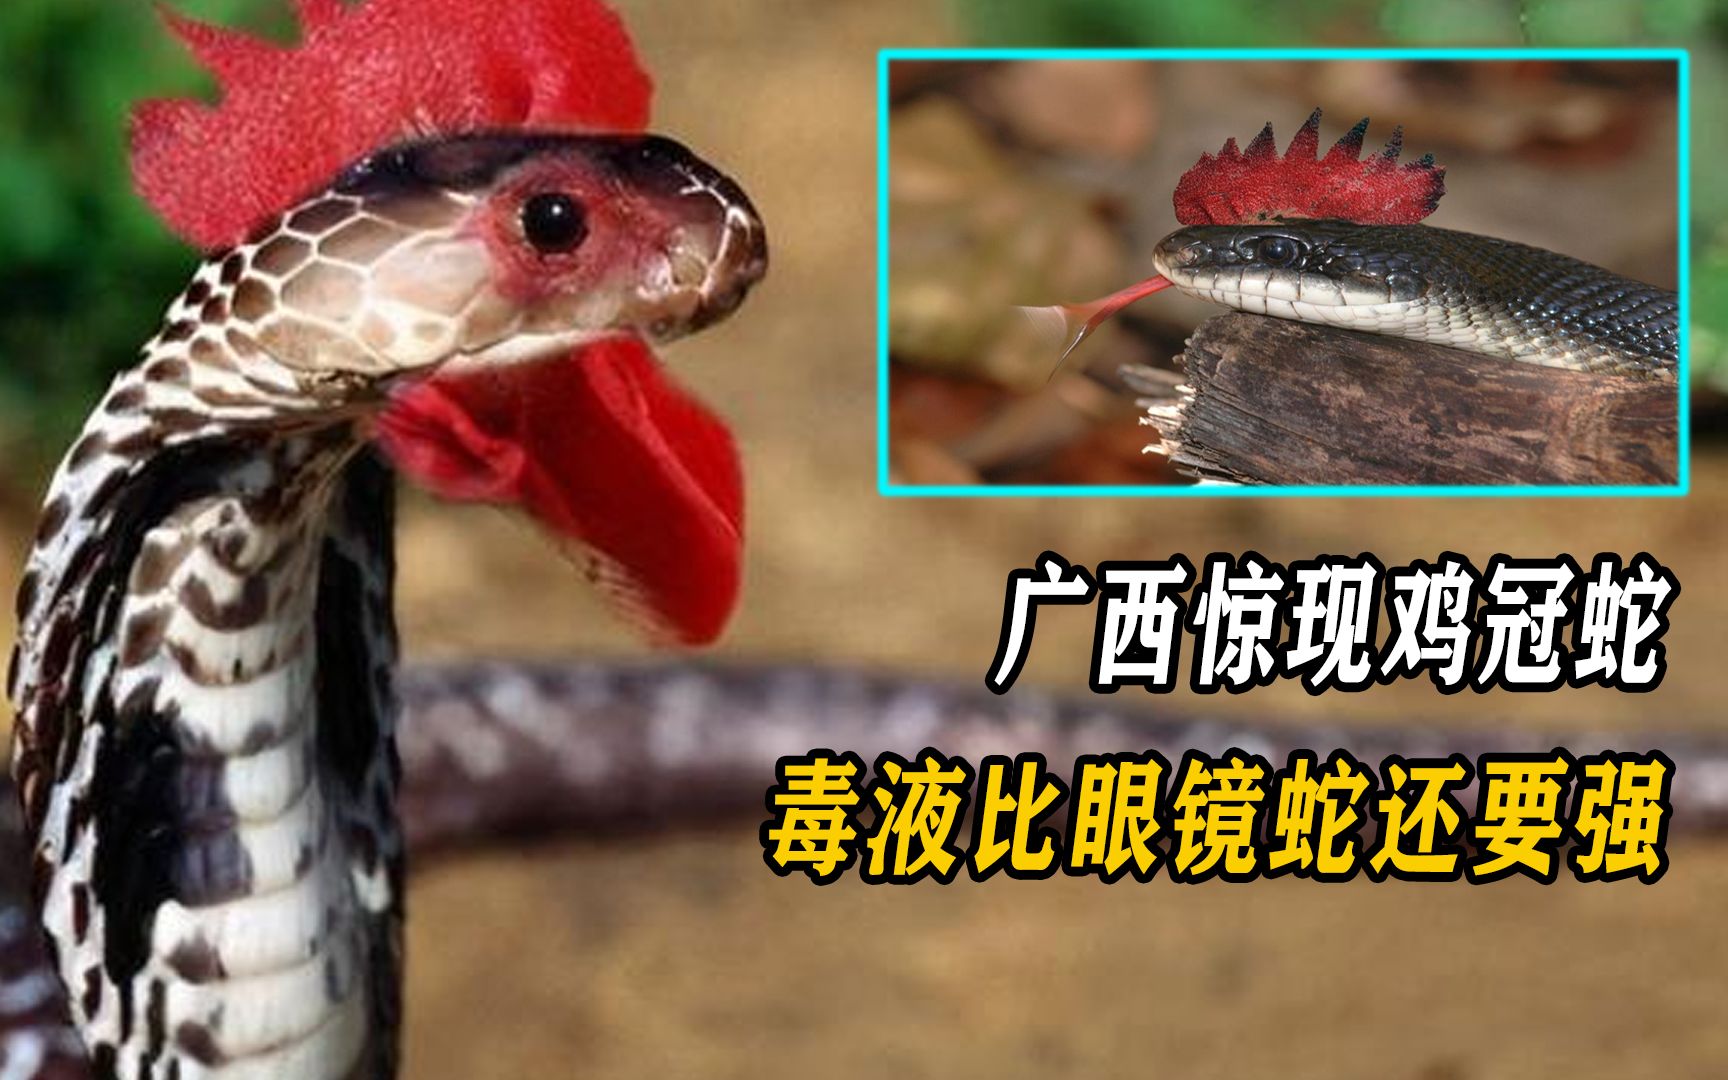 传说中的鸡冠蛇,不仅长着鸡冠还会飞,它在民间真的存在吗?